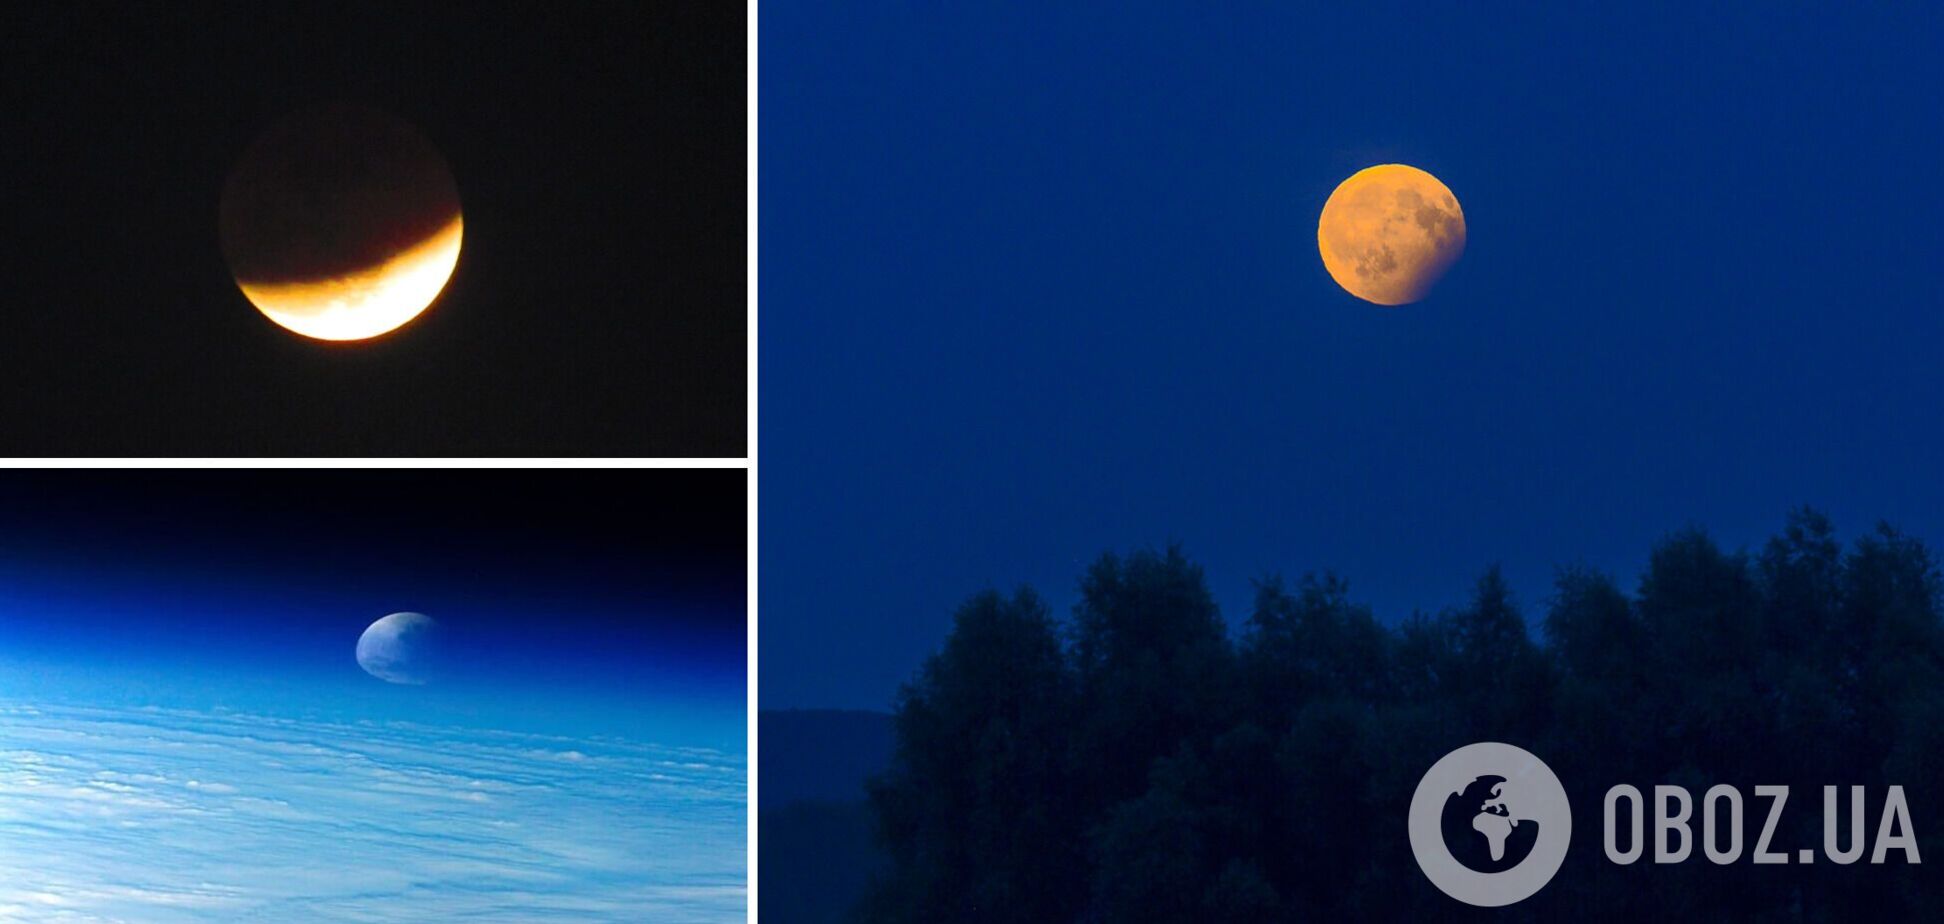 В мире наблюдали самое долгое лунное затмение за последние 500 лет. Фоторепортаж